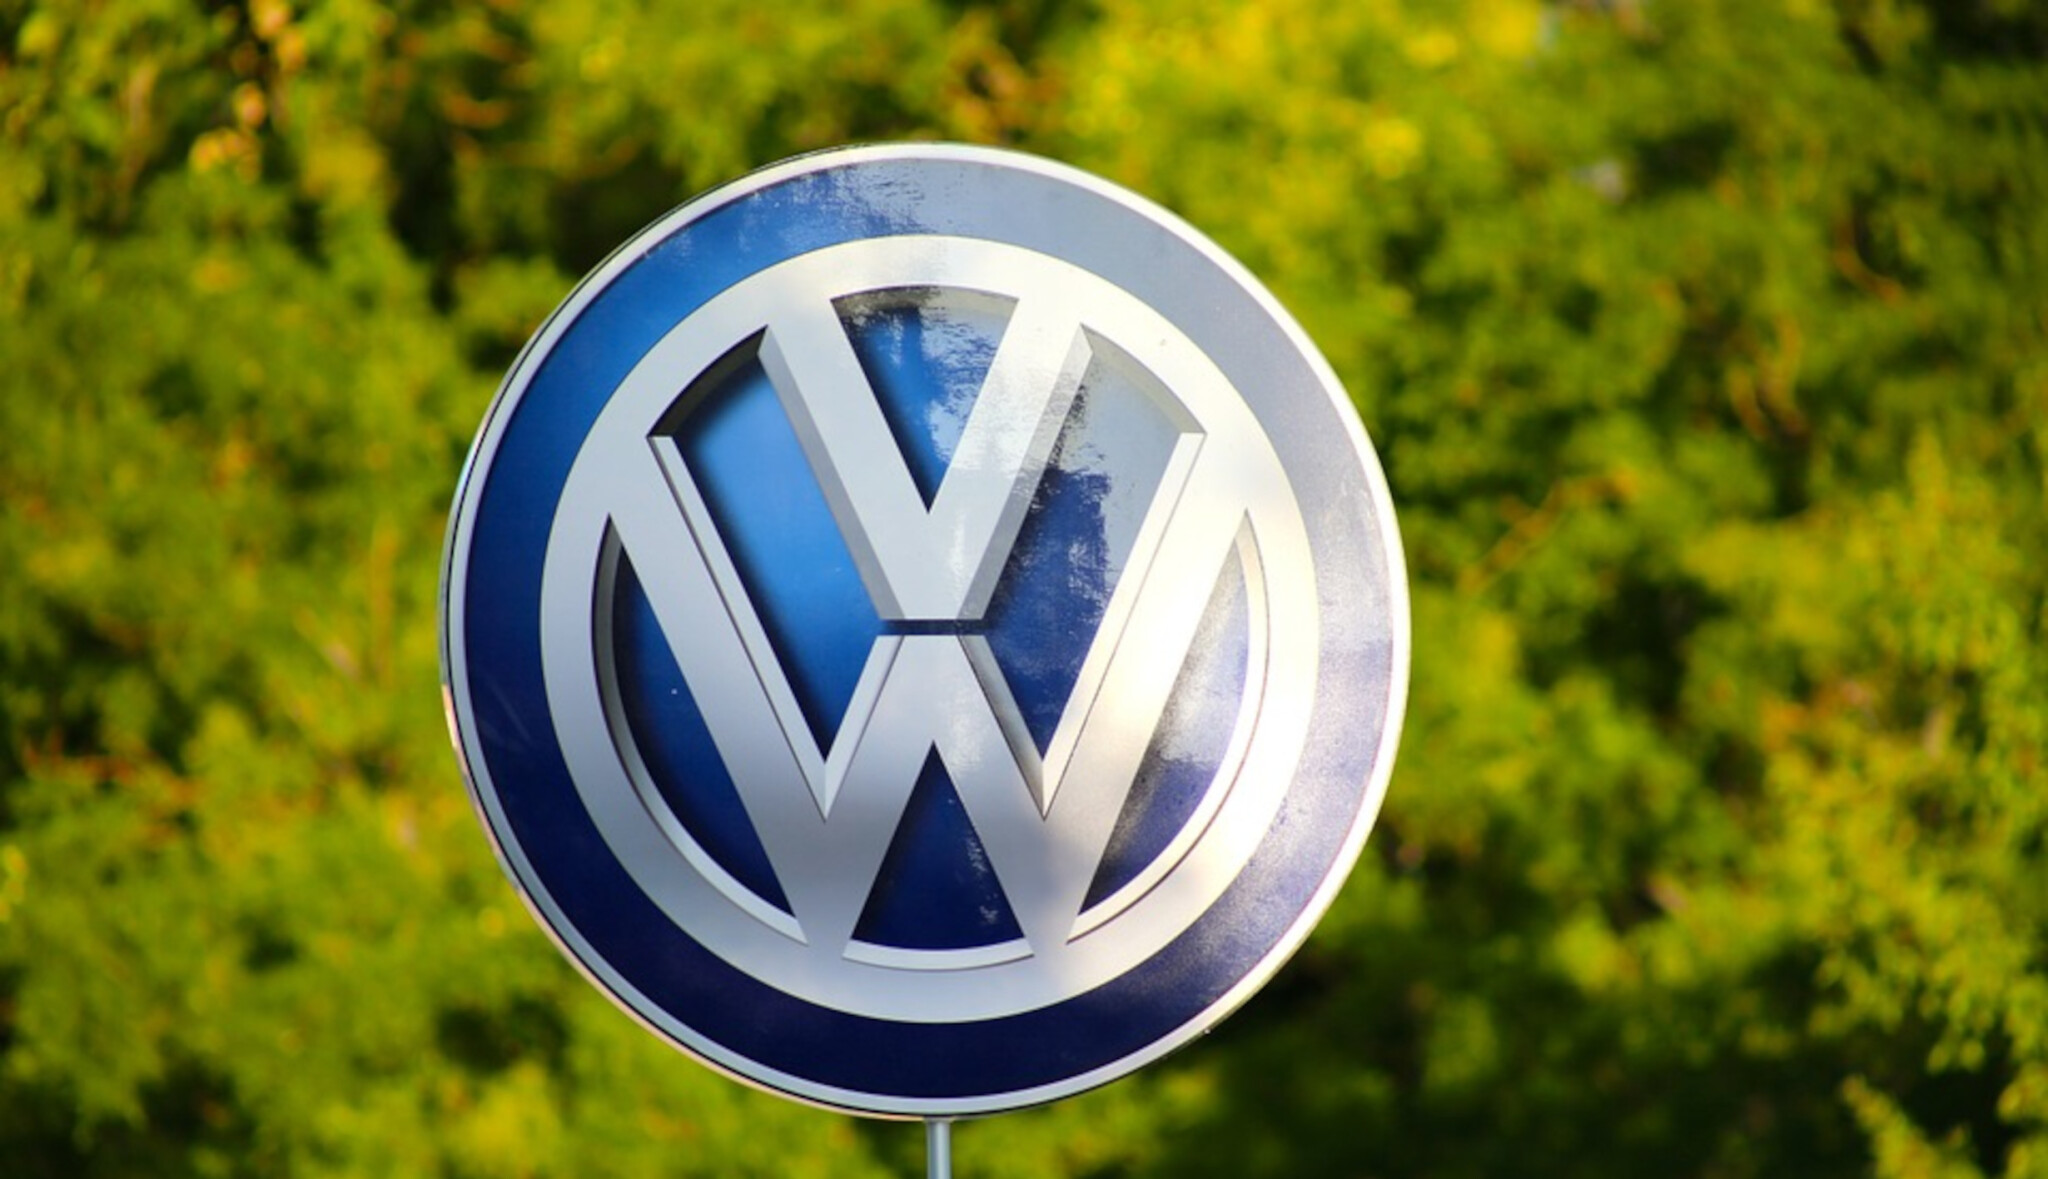 Skupina Volkswagen za sebou má rekordní půlrok a vyhlíží další růst